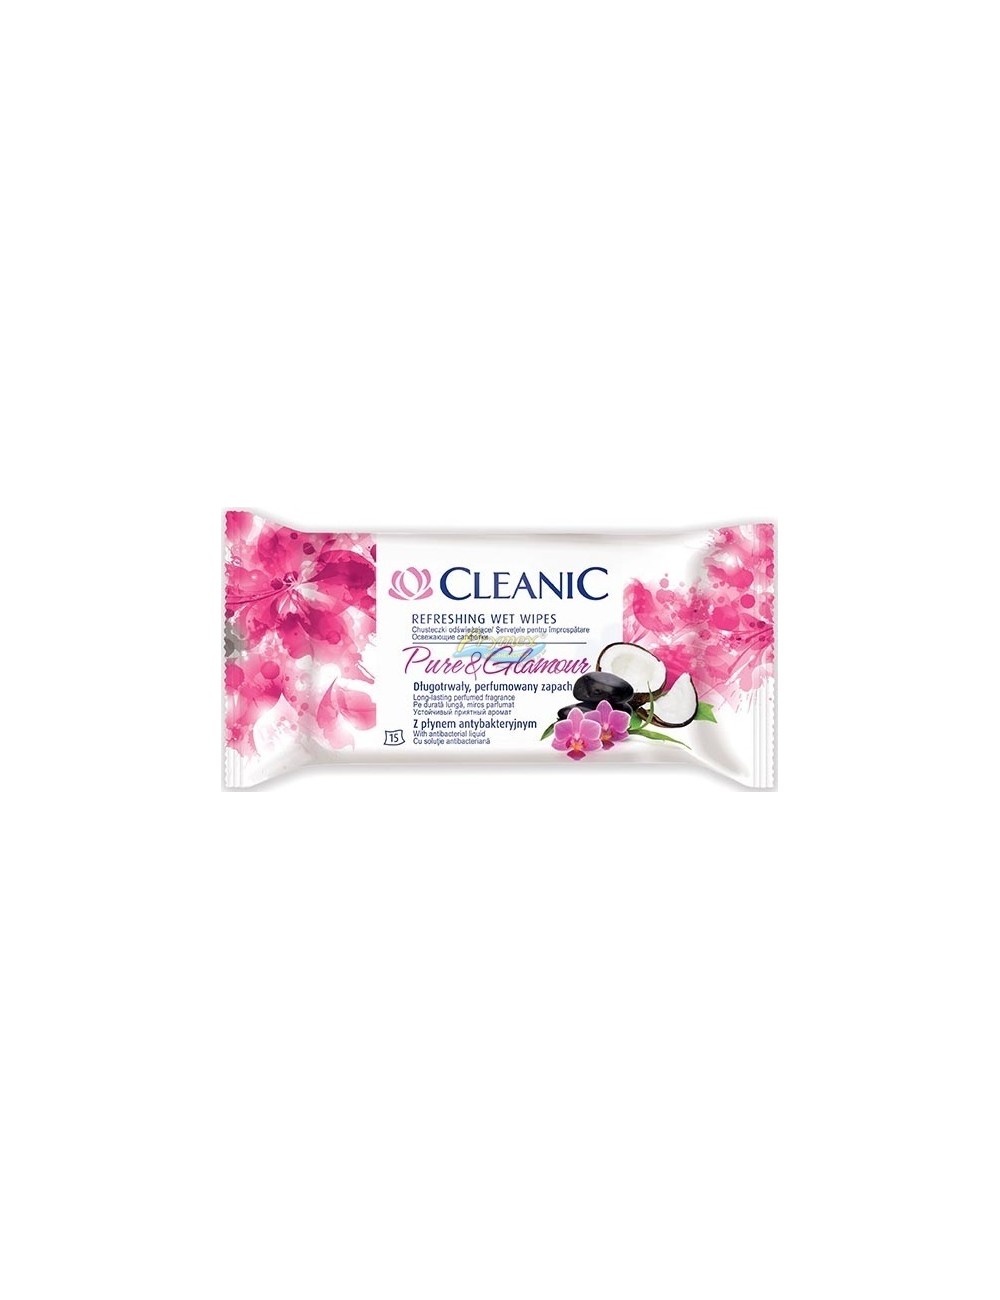 Cleanic Pure & Glamour Nawilżane Chusteczki Odświeżające z Płynem Antybakteryjnym 15 szt